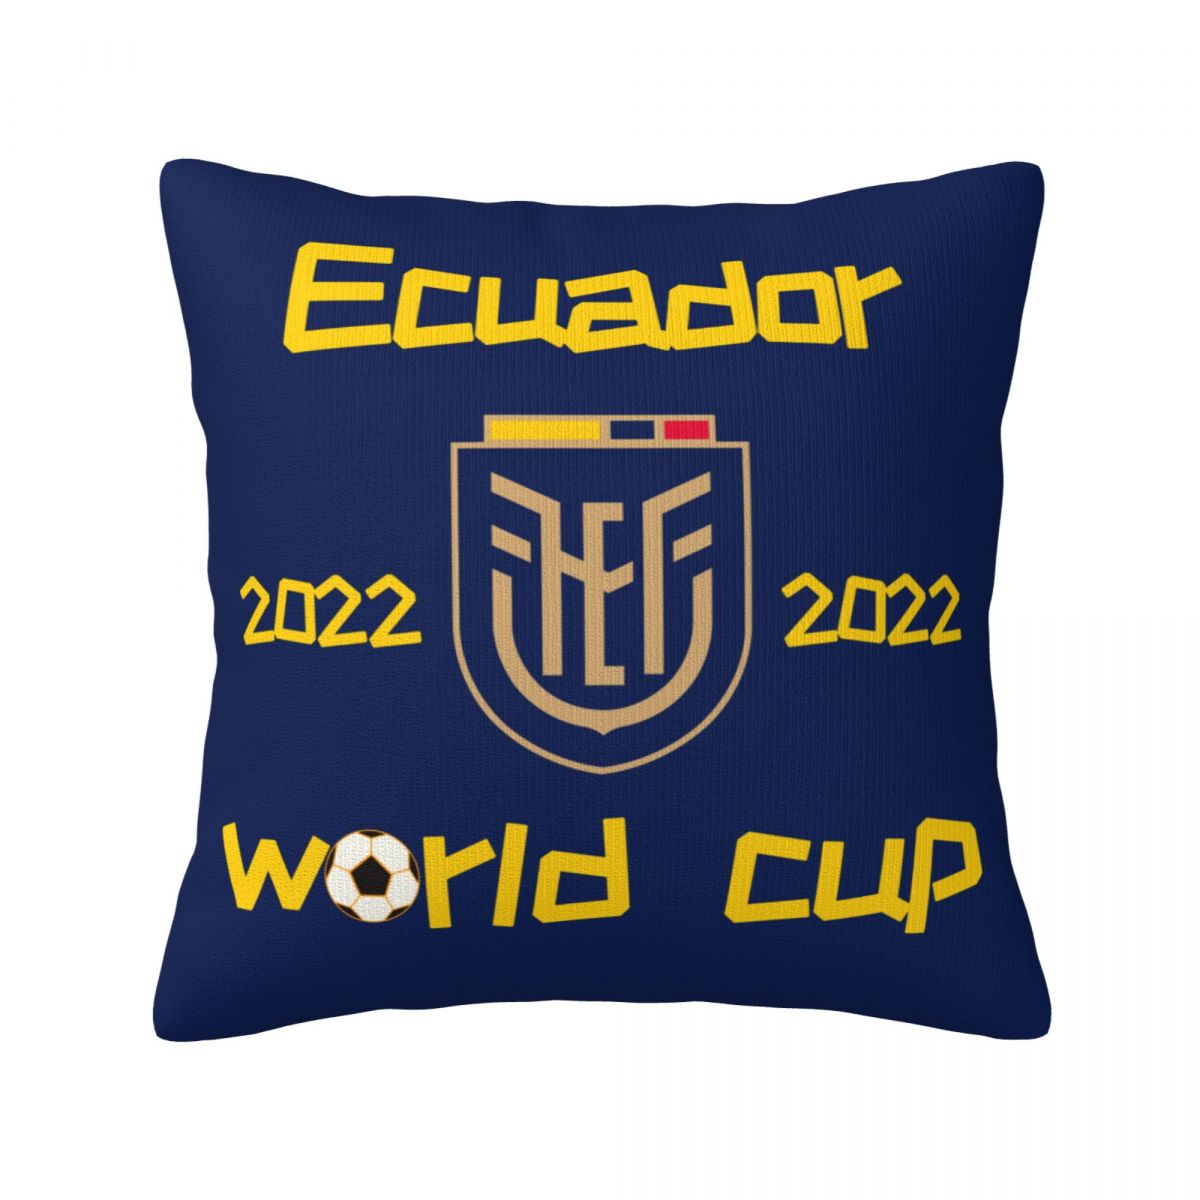 Ecuador 2022 World Cup Team Logo Decorative Square Throw Pillow Covers